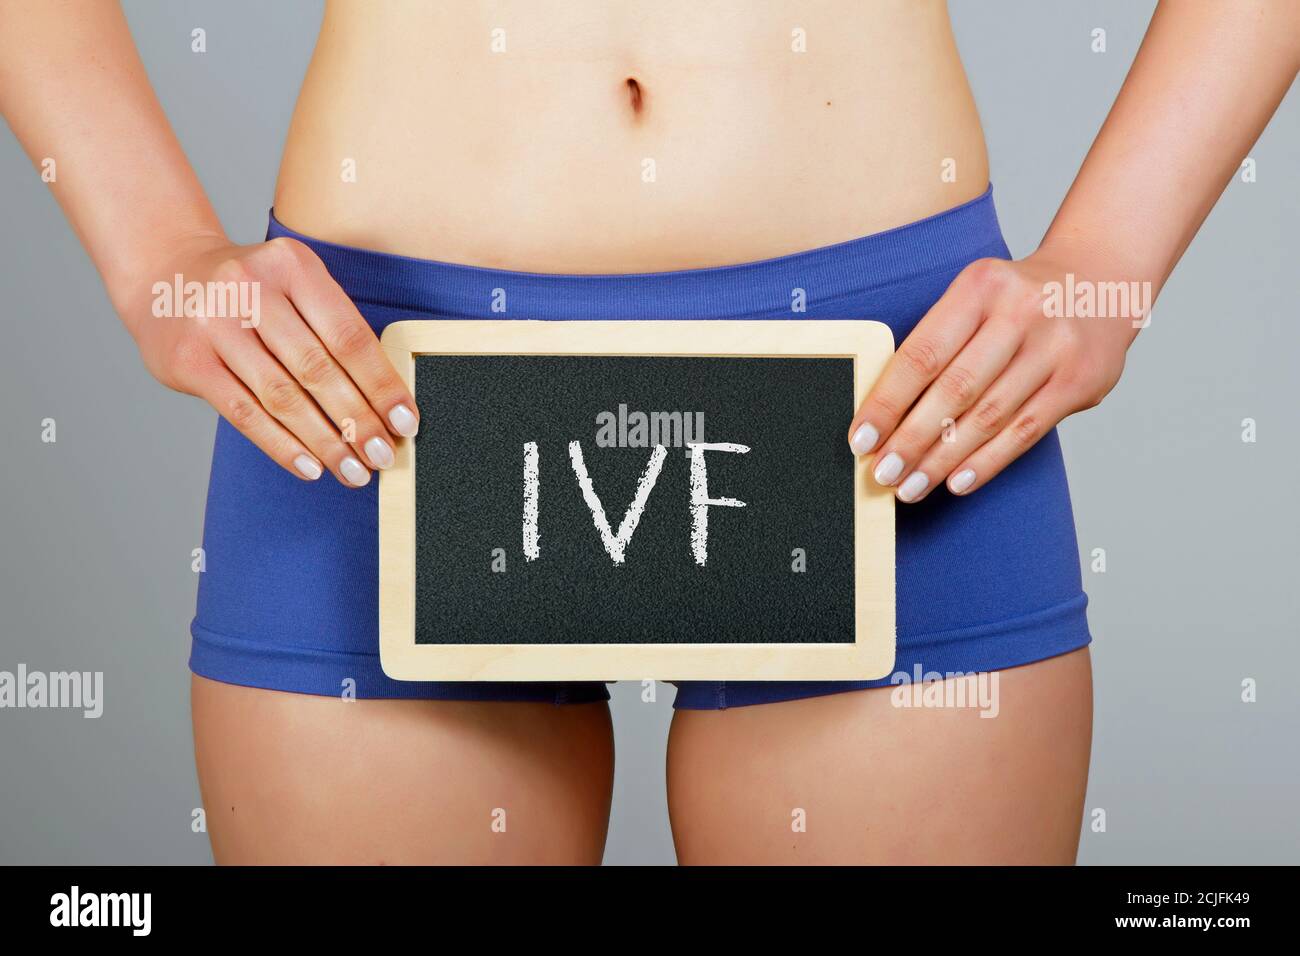 Concepto de fertilización in vitro. Mujer sostiene una pequeña pizarra con inscripción 'IVF' Foto de stock